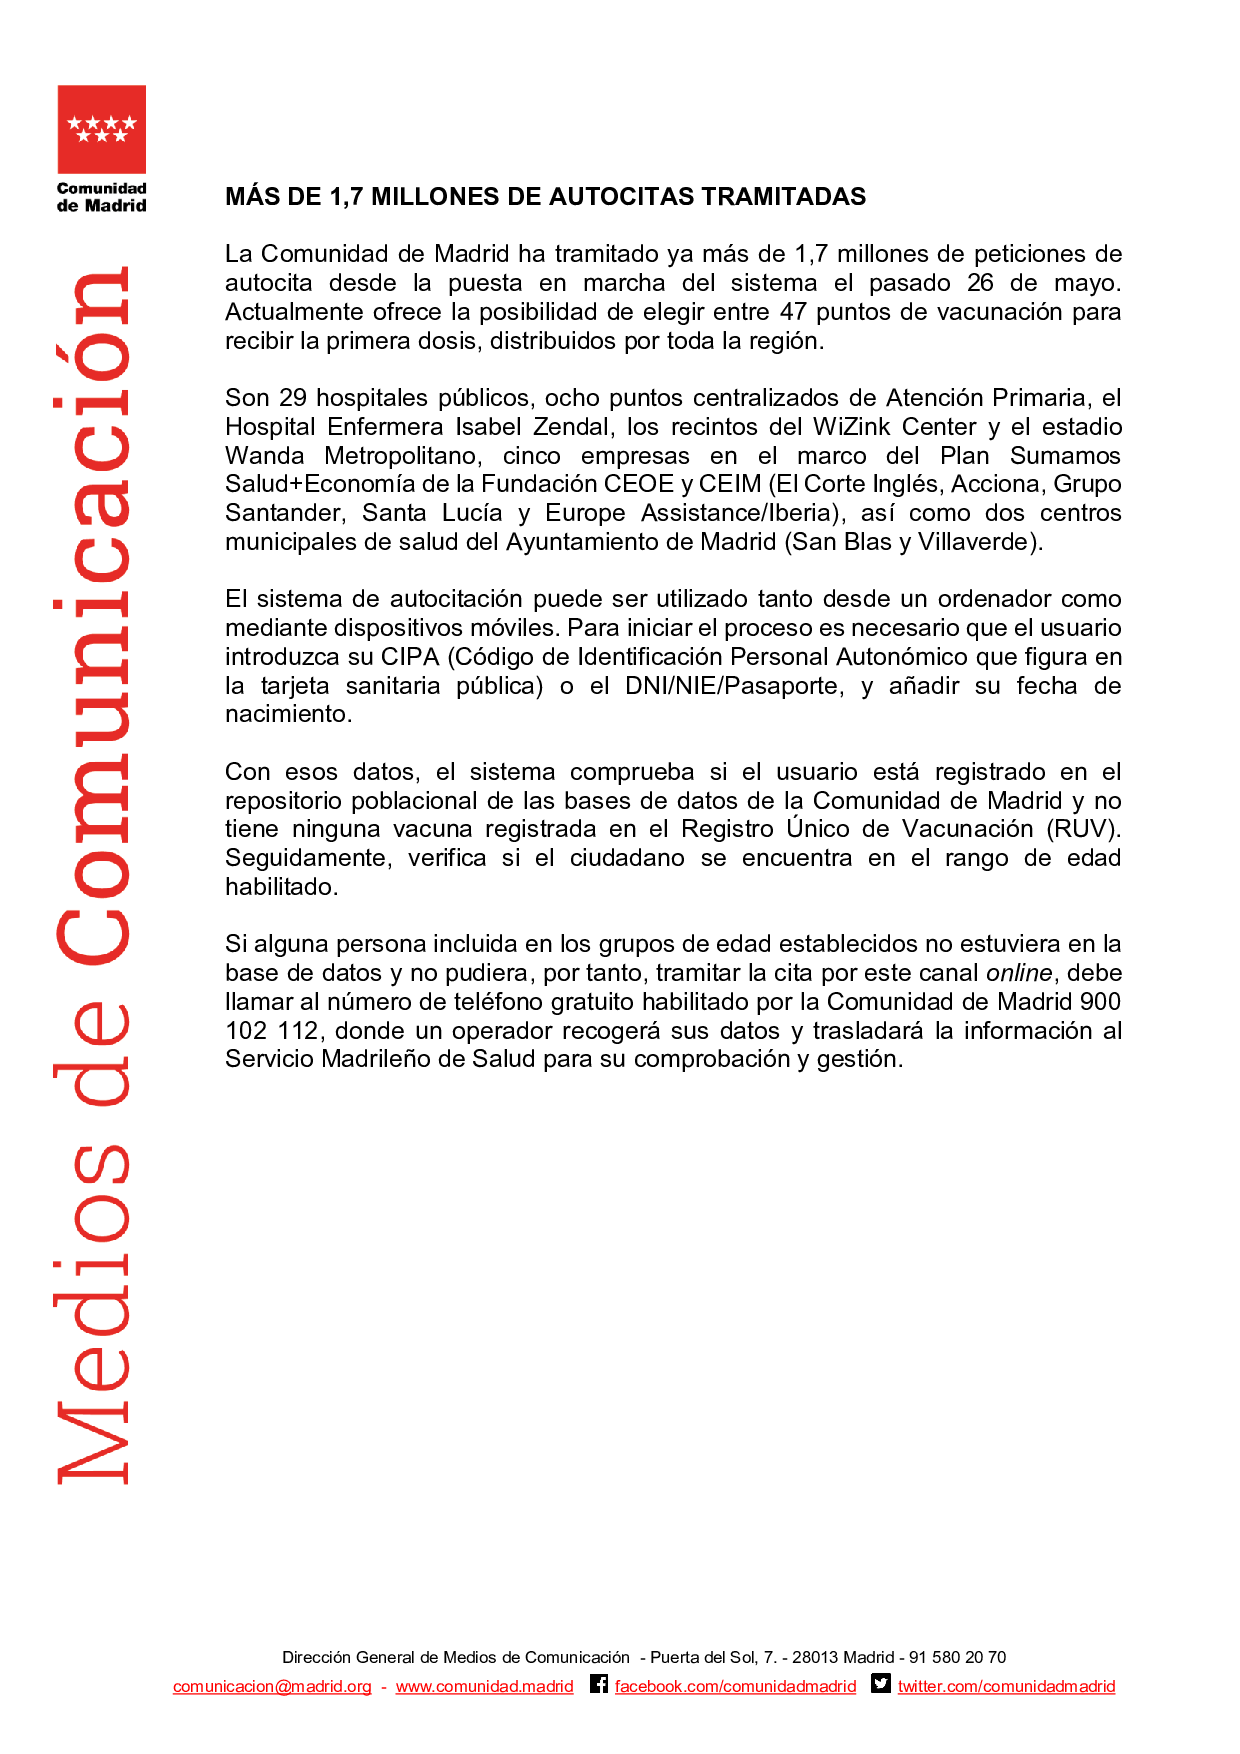 Salud Madrid on Twitter: "La @ComunidadMadrid abre la #autocita para la vacuna contra #COVID19 a la de 12 años adelante #coronavirusmadrid #Madrid / Twitter